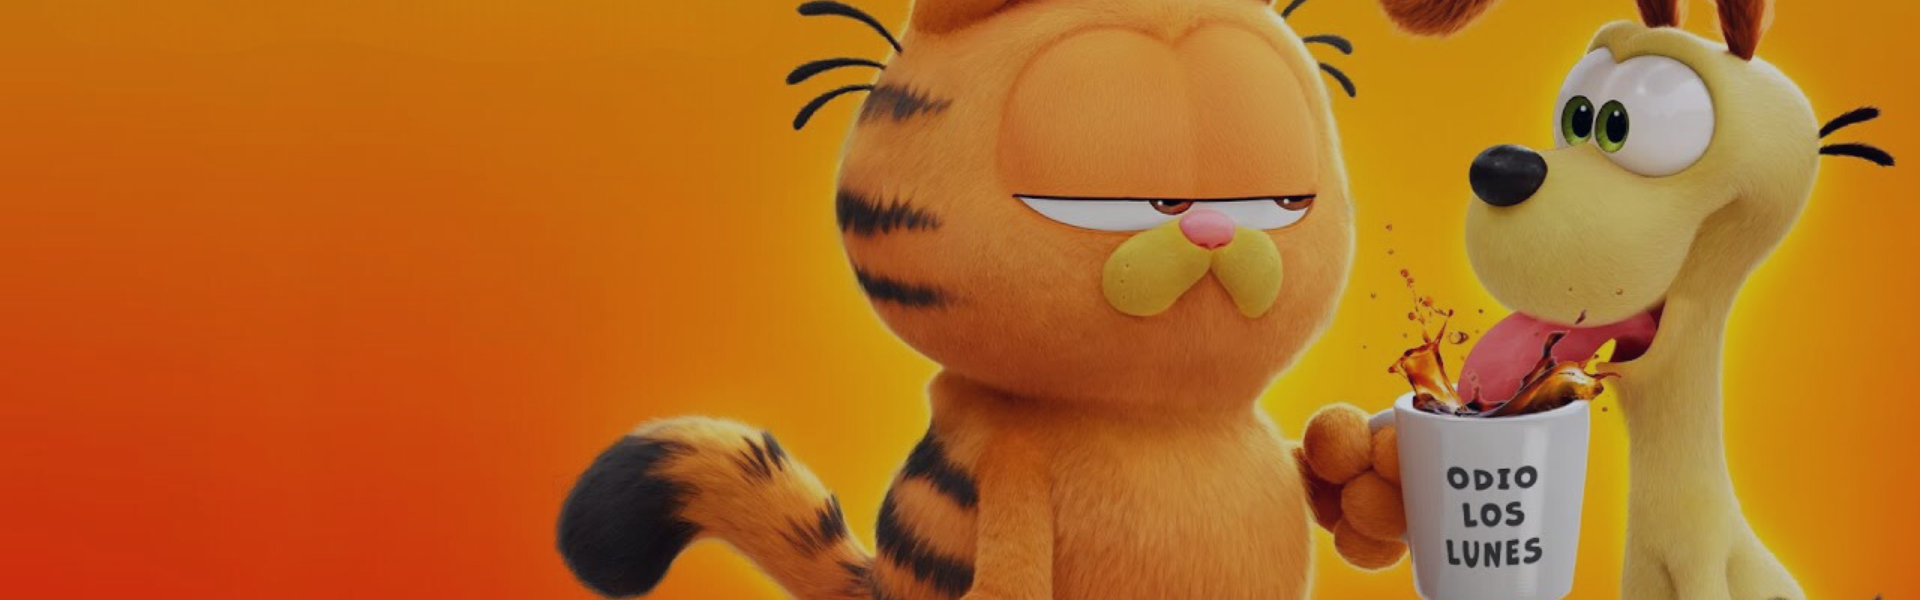 Garfield: Fuera de Casa